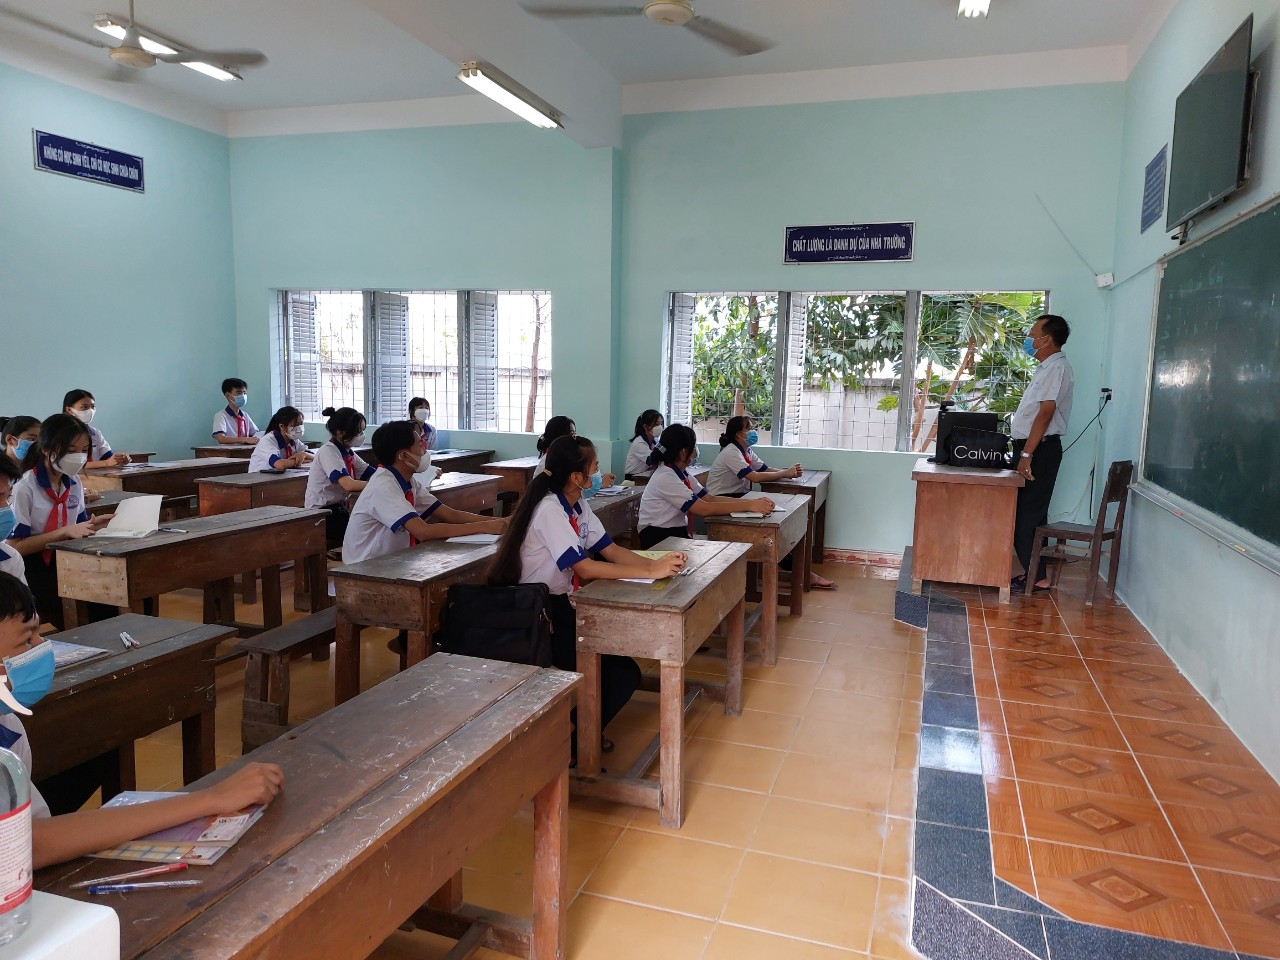 Huyện đầu tiên tỉnh Tiền Giang cho học sinh lớp 9 và 12 trở lại trường